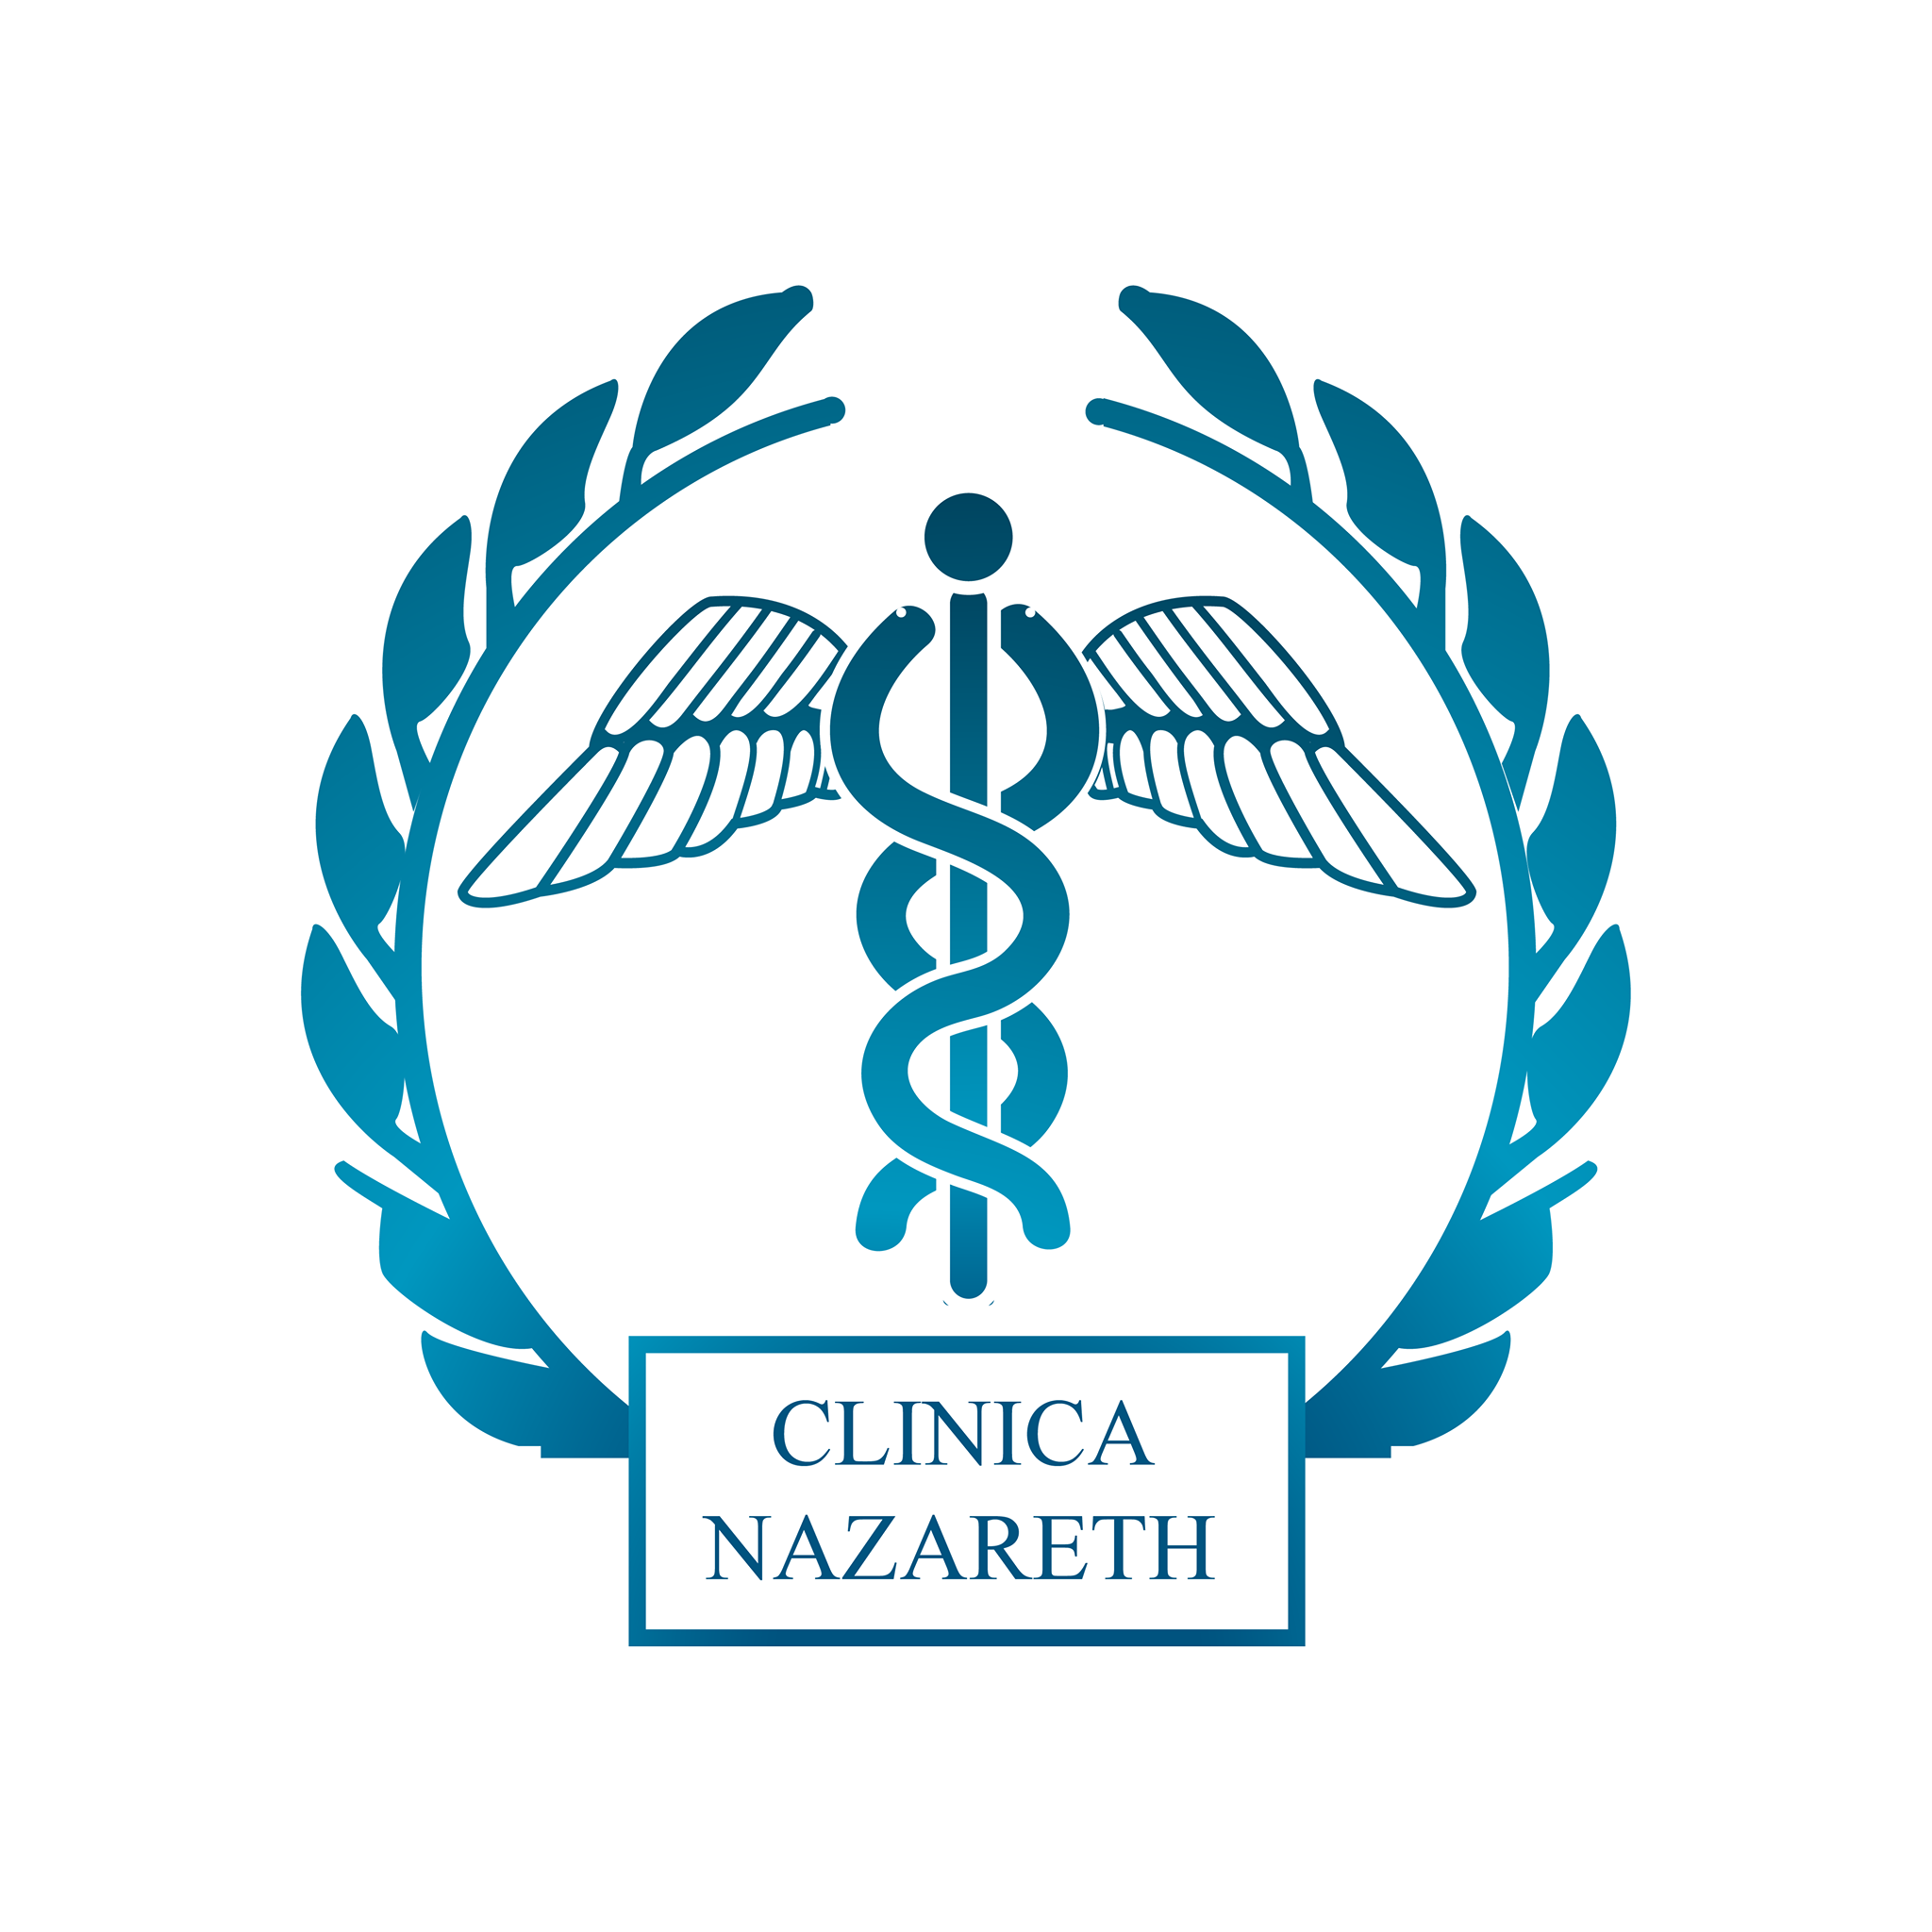 Clínica Nazareth logo